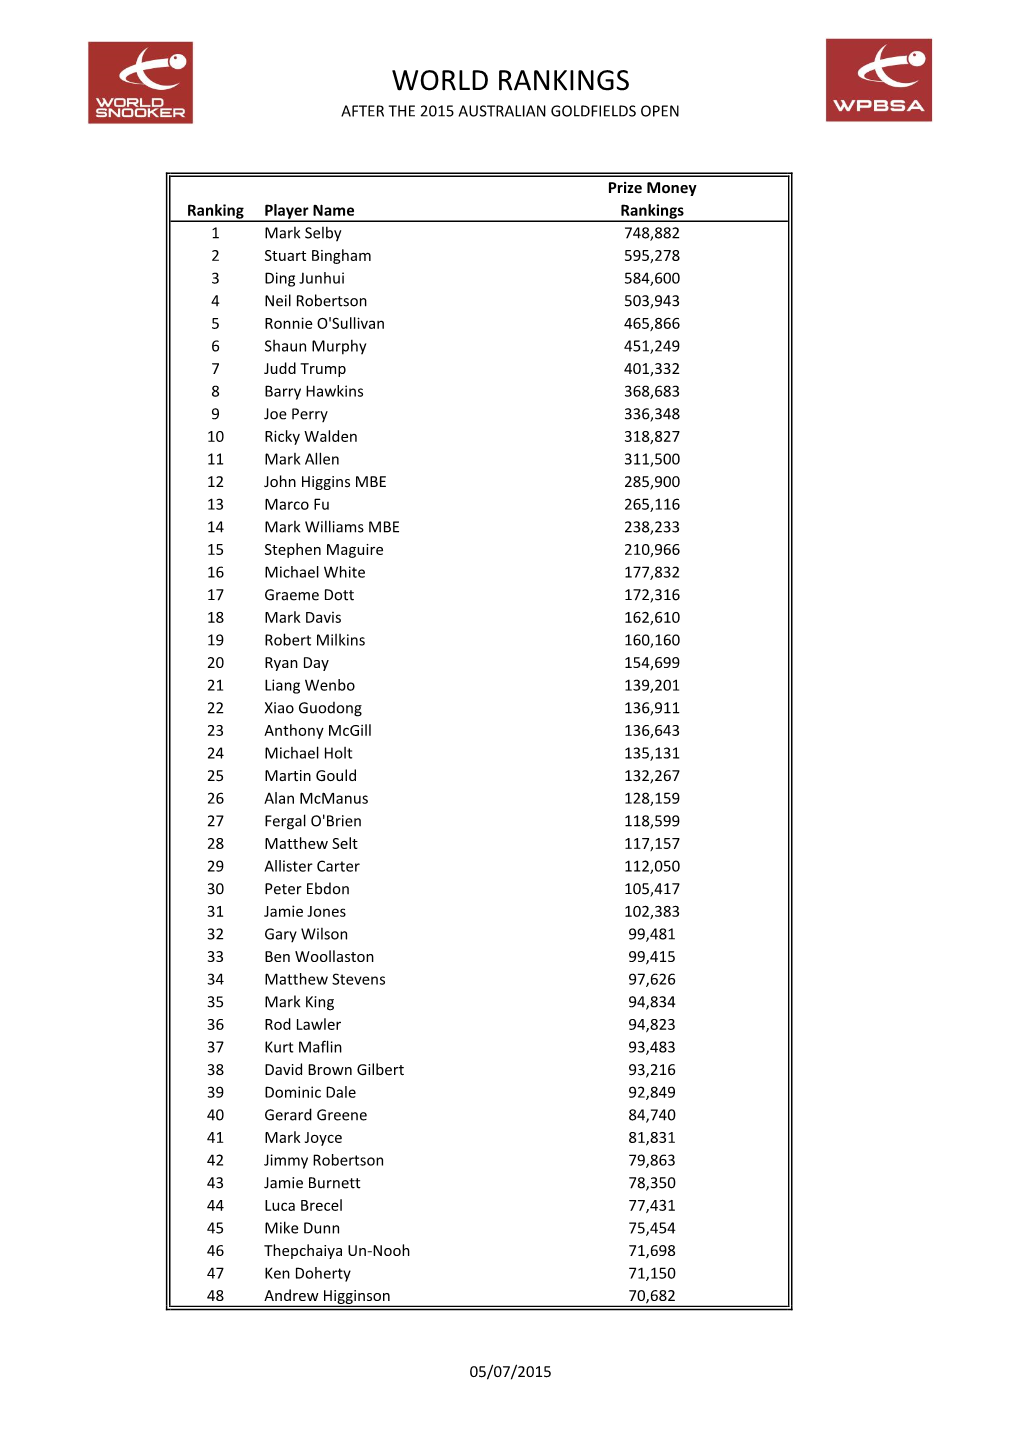 World Rankings After the 2015 Australian Goldfields Open